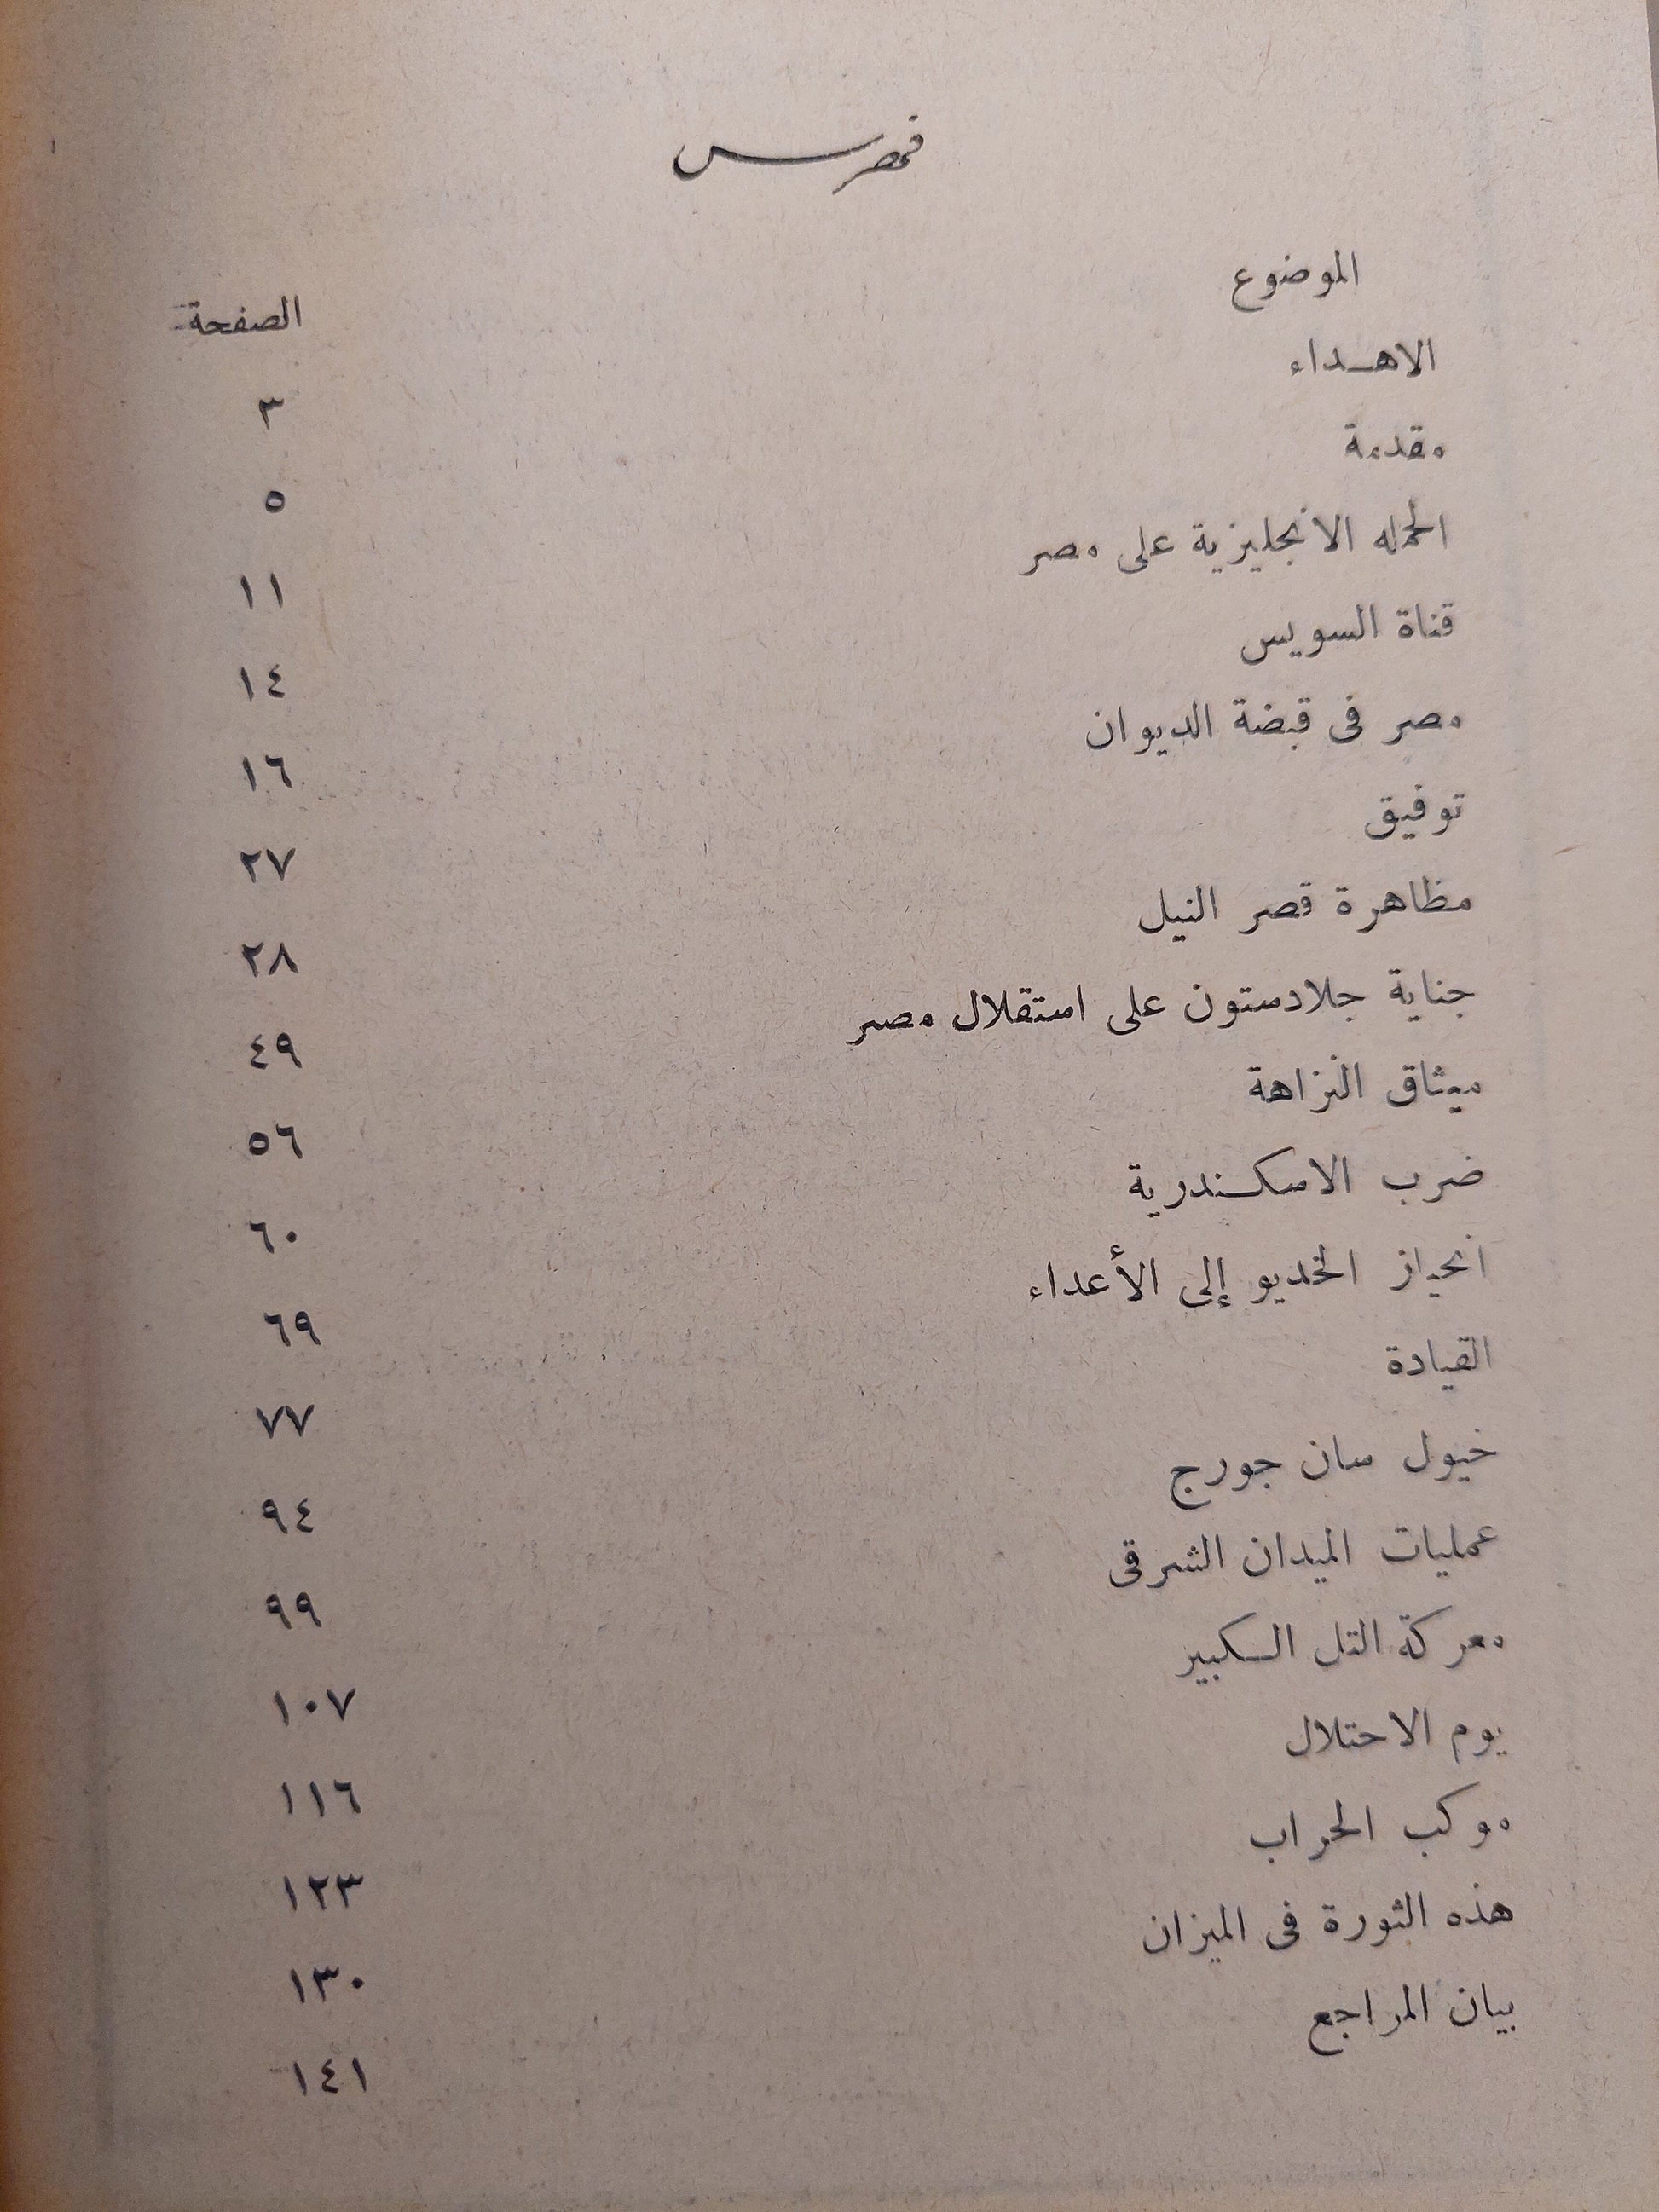 الثورة العرابية في الميزان - حسن حافظ كتاب المكتبة الفلسفية 